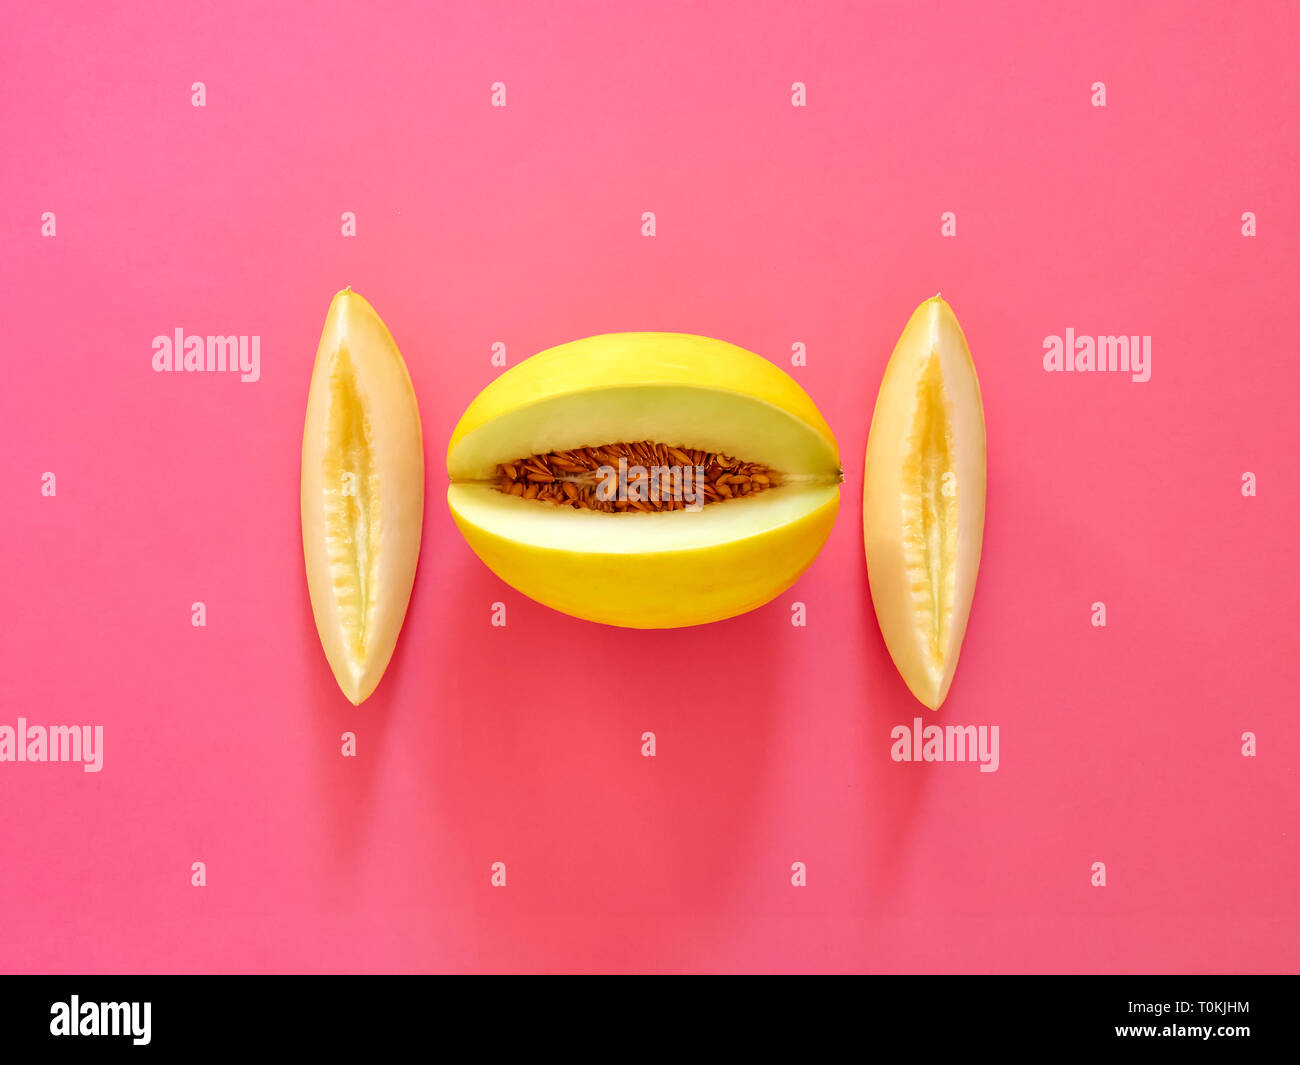 Gelbe Melone Obst isoliert in fucsia Hintergrund von oben betrachtet - flatlay Aussehen - Bild Minimalismus Konzept Stockfoto